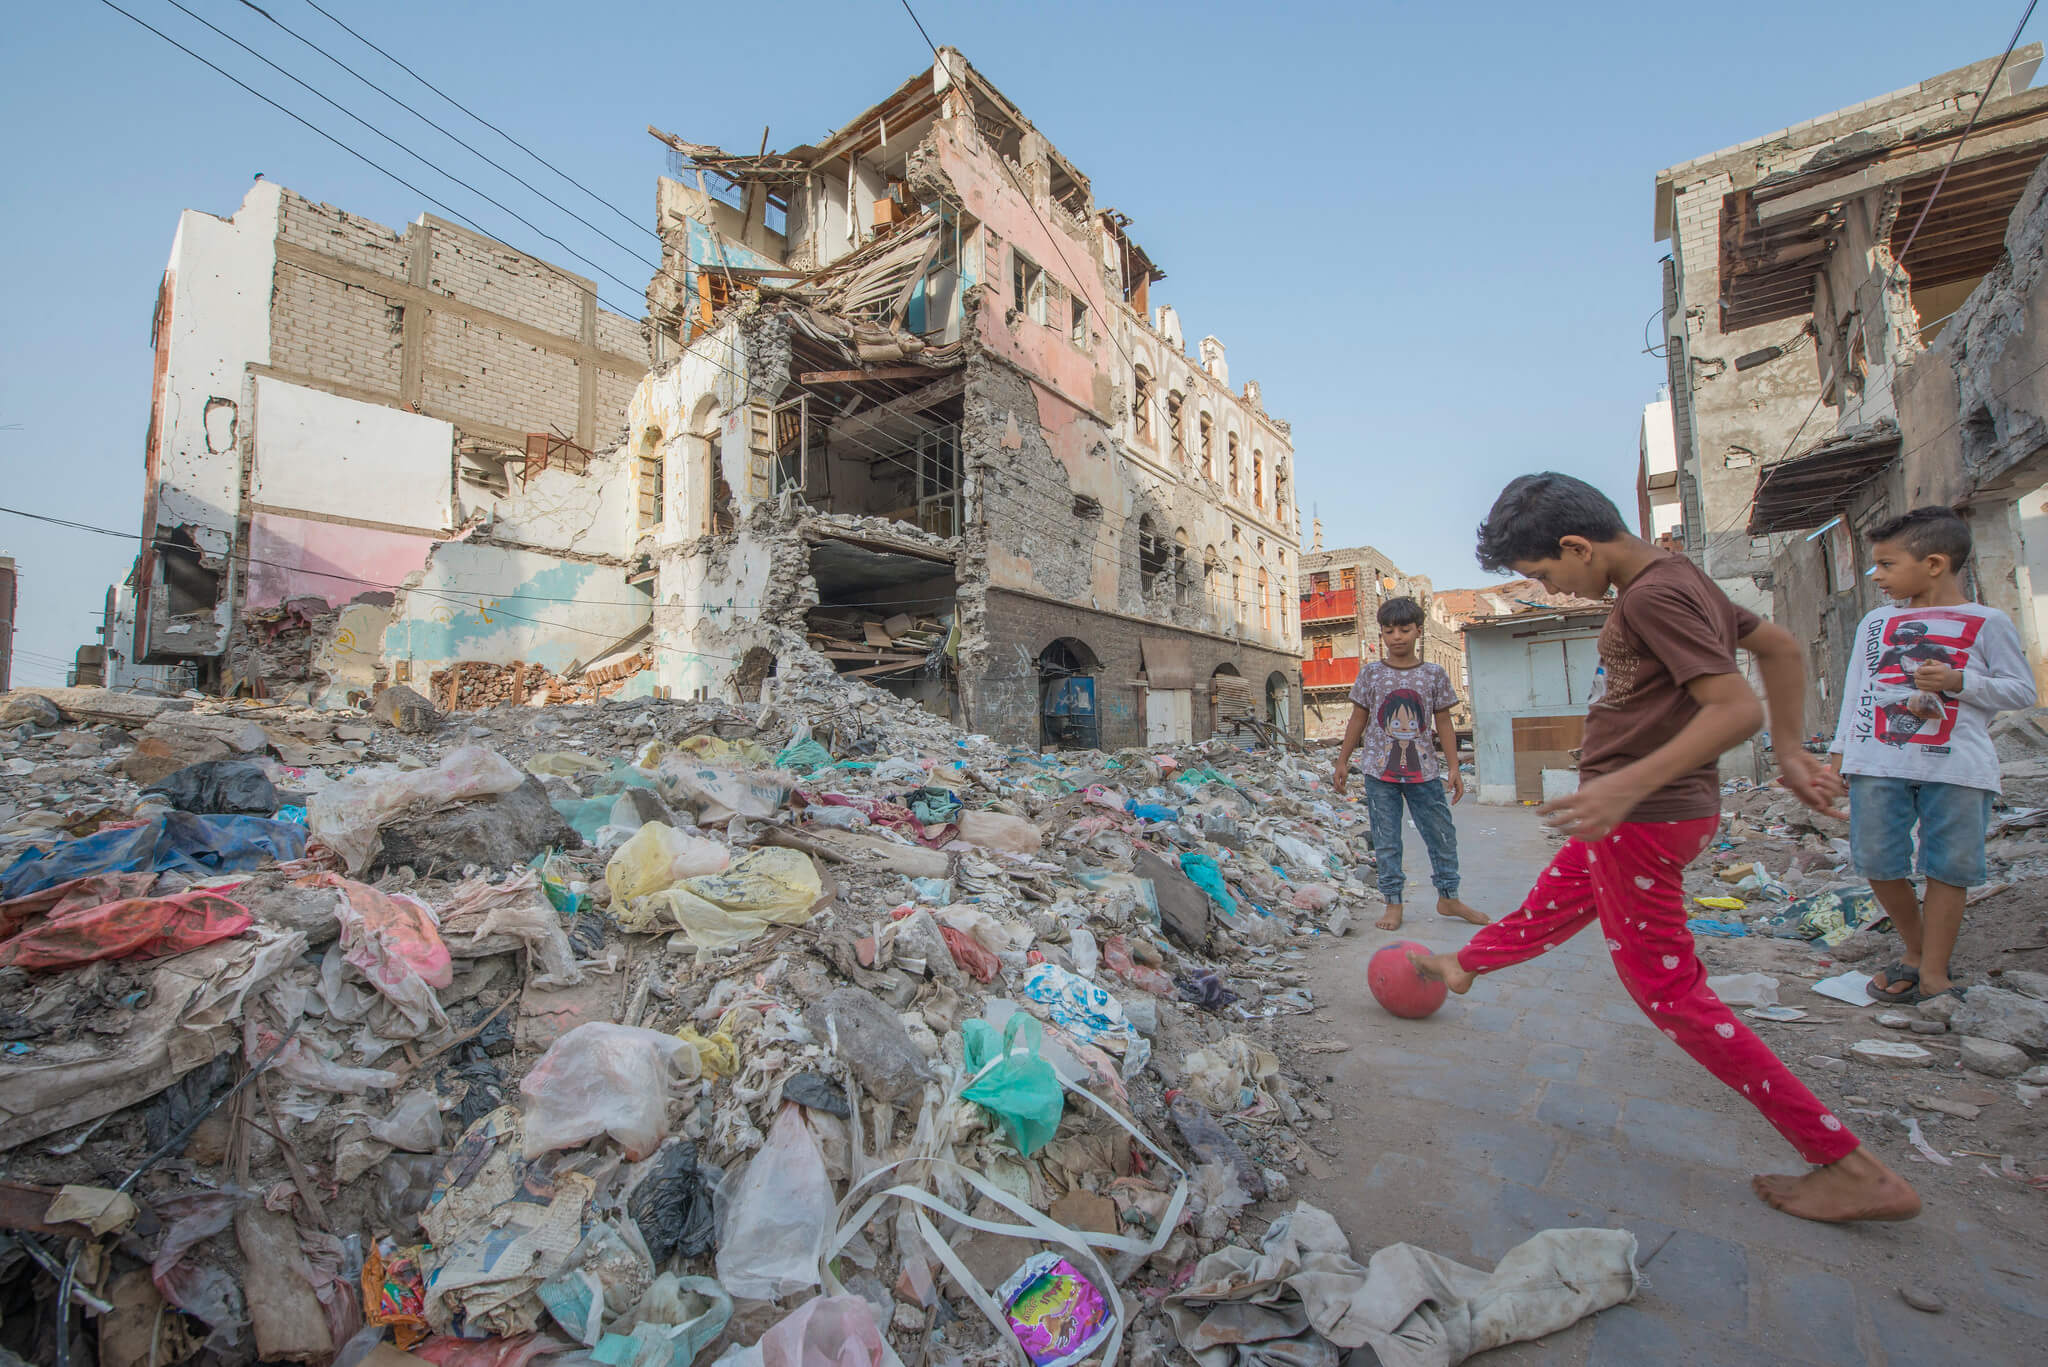 Kinderen in Jemen spelen te midden van het puin veroorzaakt door een luchtaanval in 2019. © Flickr / EU Civil Protection and Humanitarian Aid